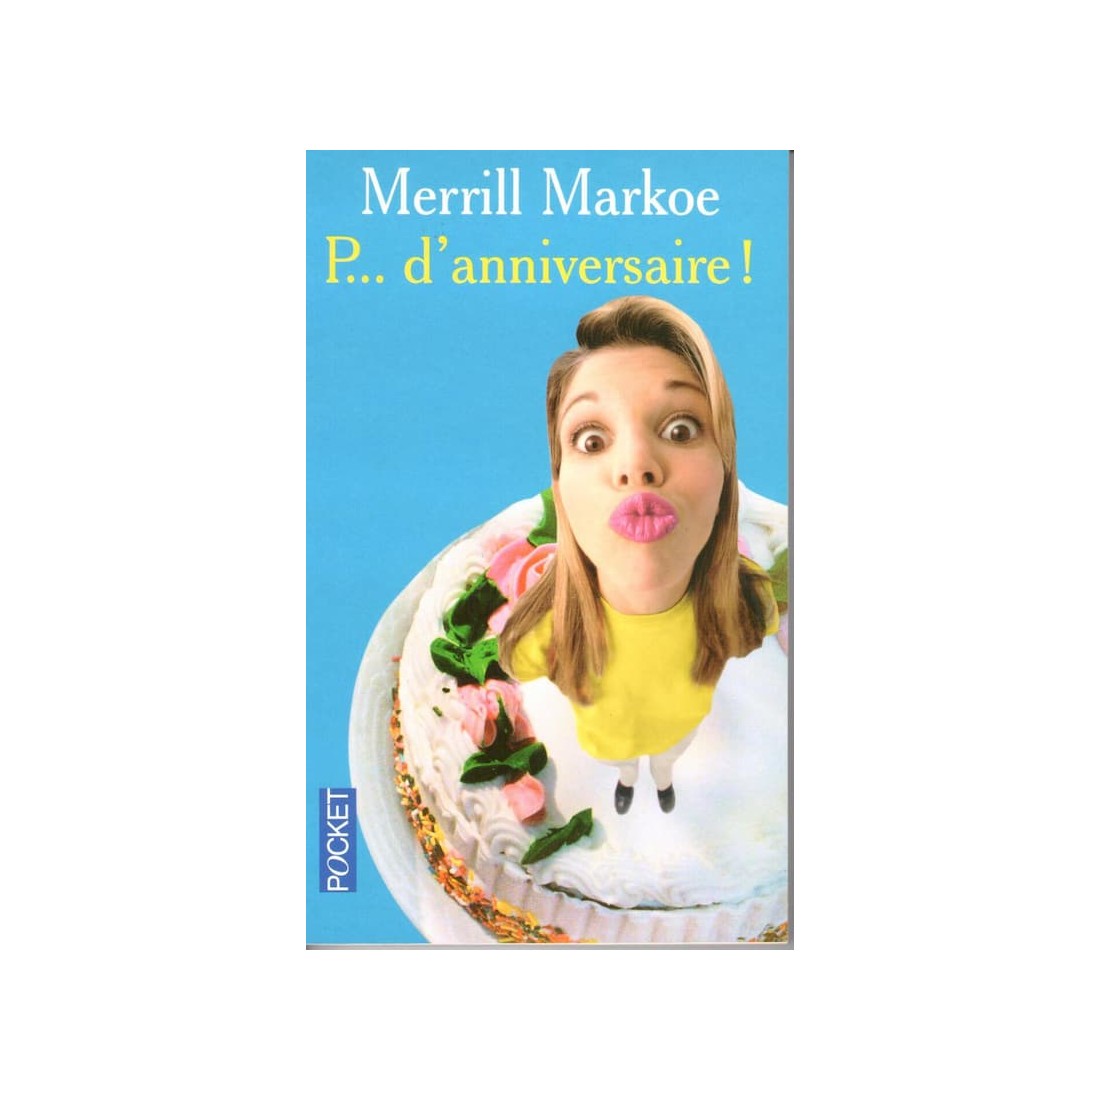 P... d'anniversaire - Roman de Merrill Markoe - Ocazlivres.com